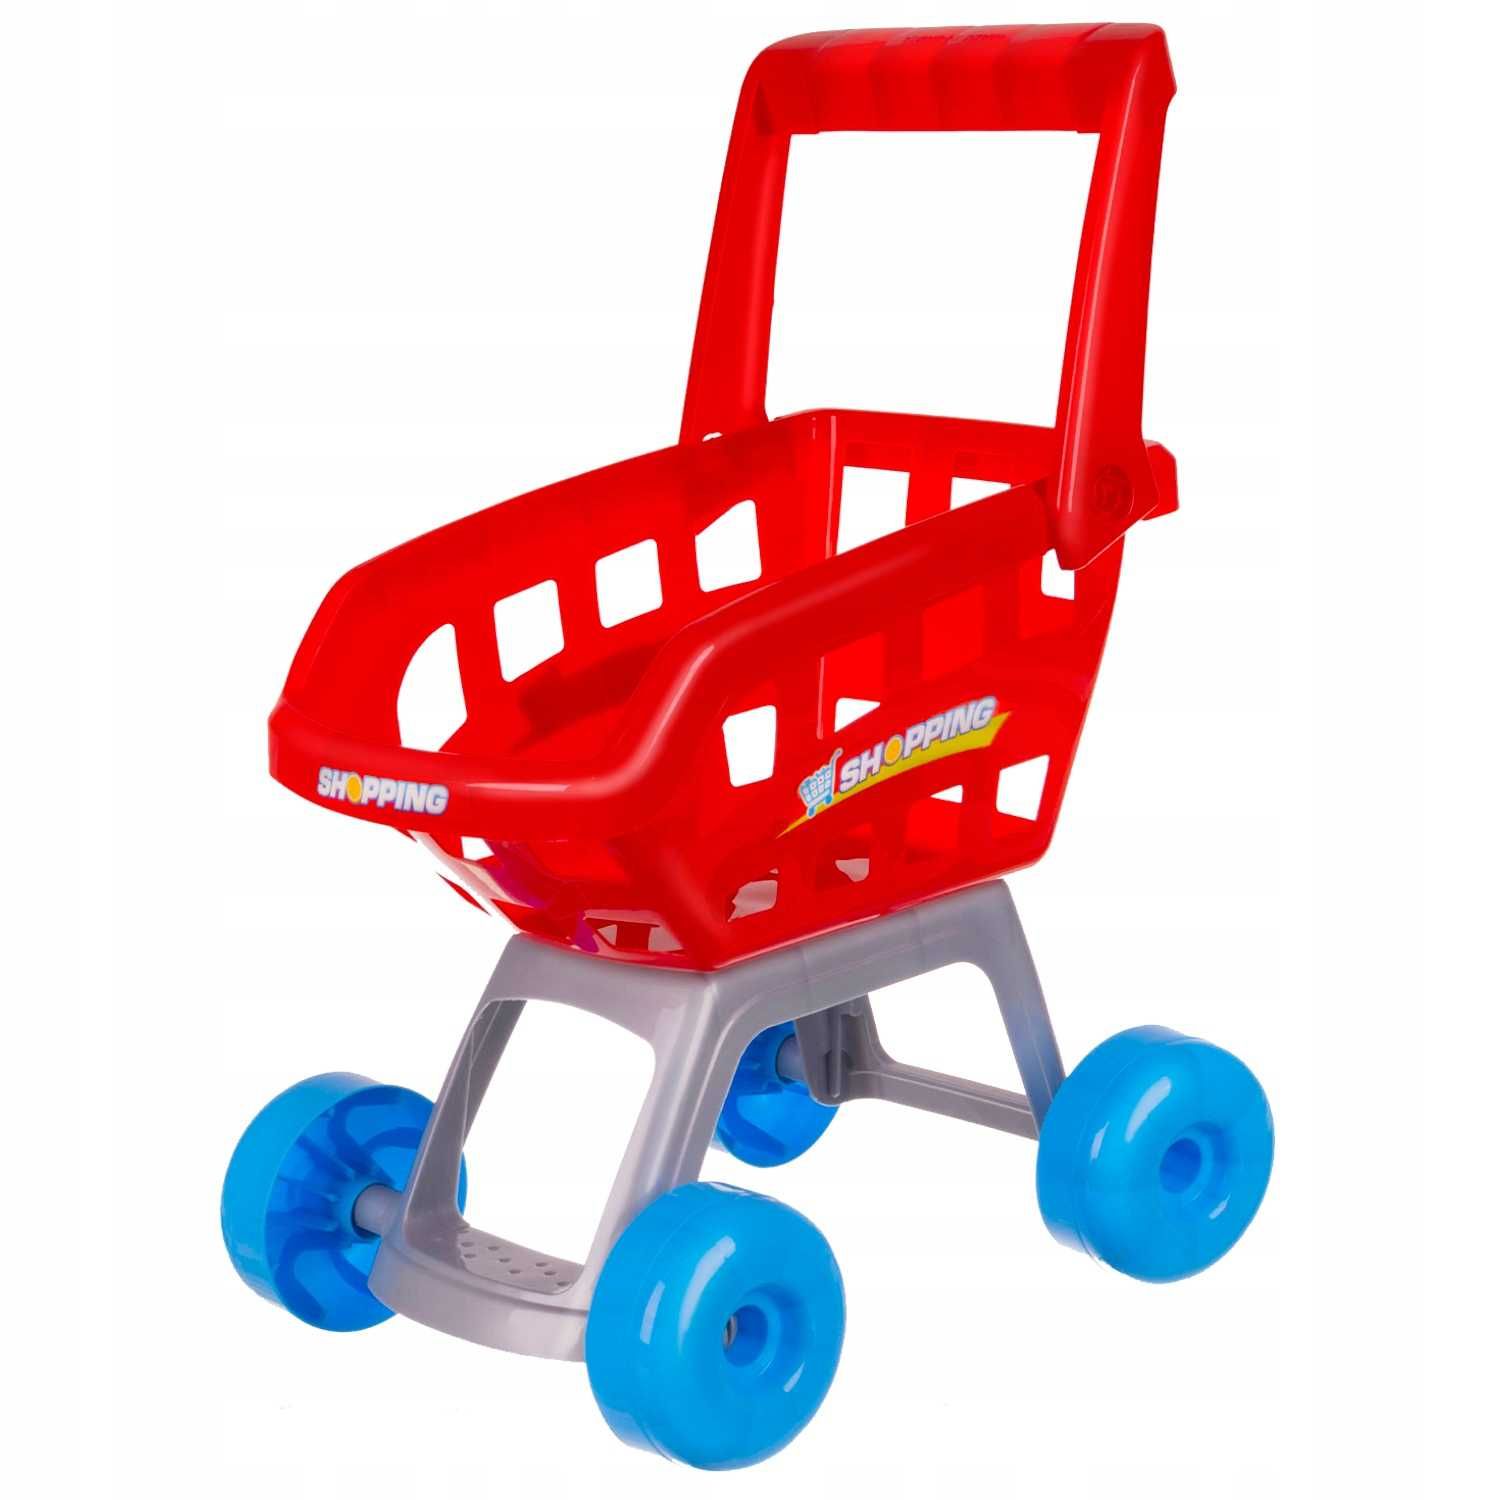 Supermarket Sklep Kasa dla Dzieci Stragan + Wózek Koszyk Akcesoria